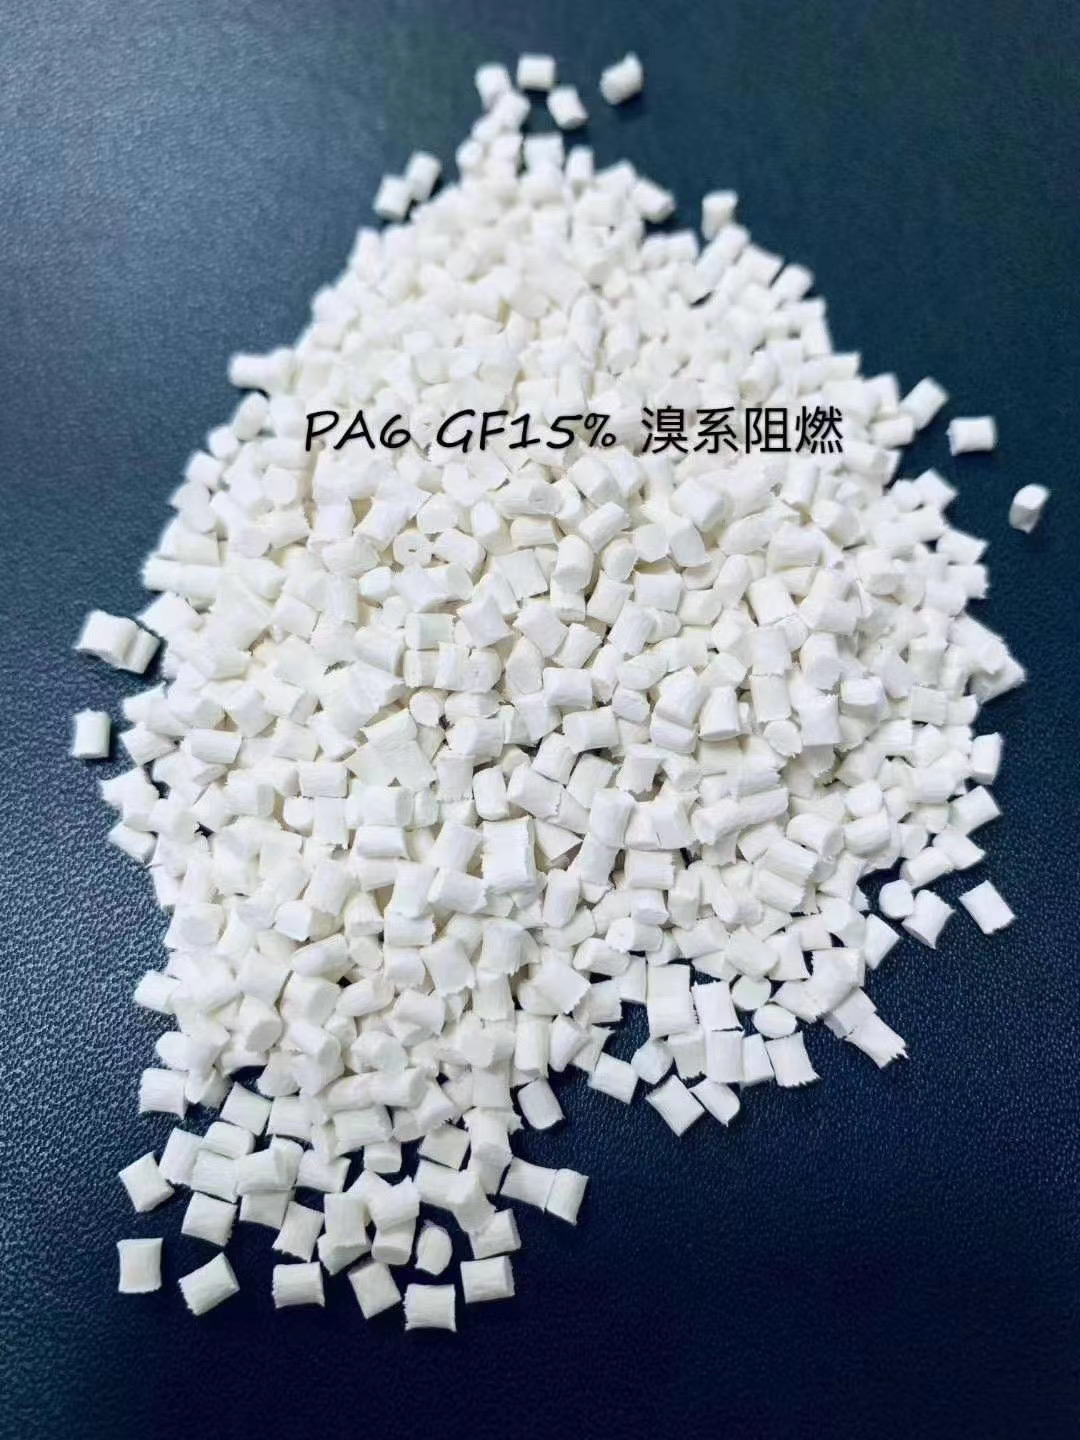 廣西聚碳酸酯塑料供應商 PC聚碳酸酯供應商